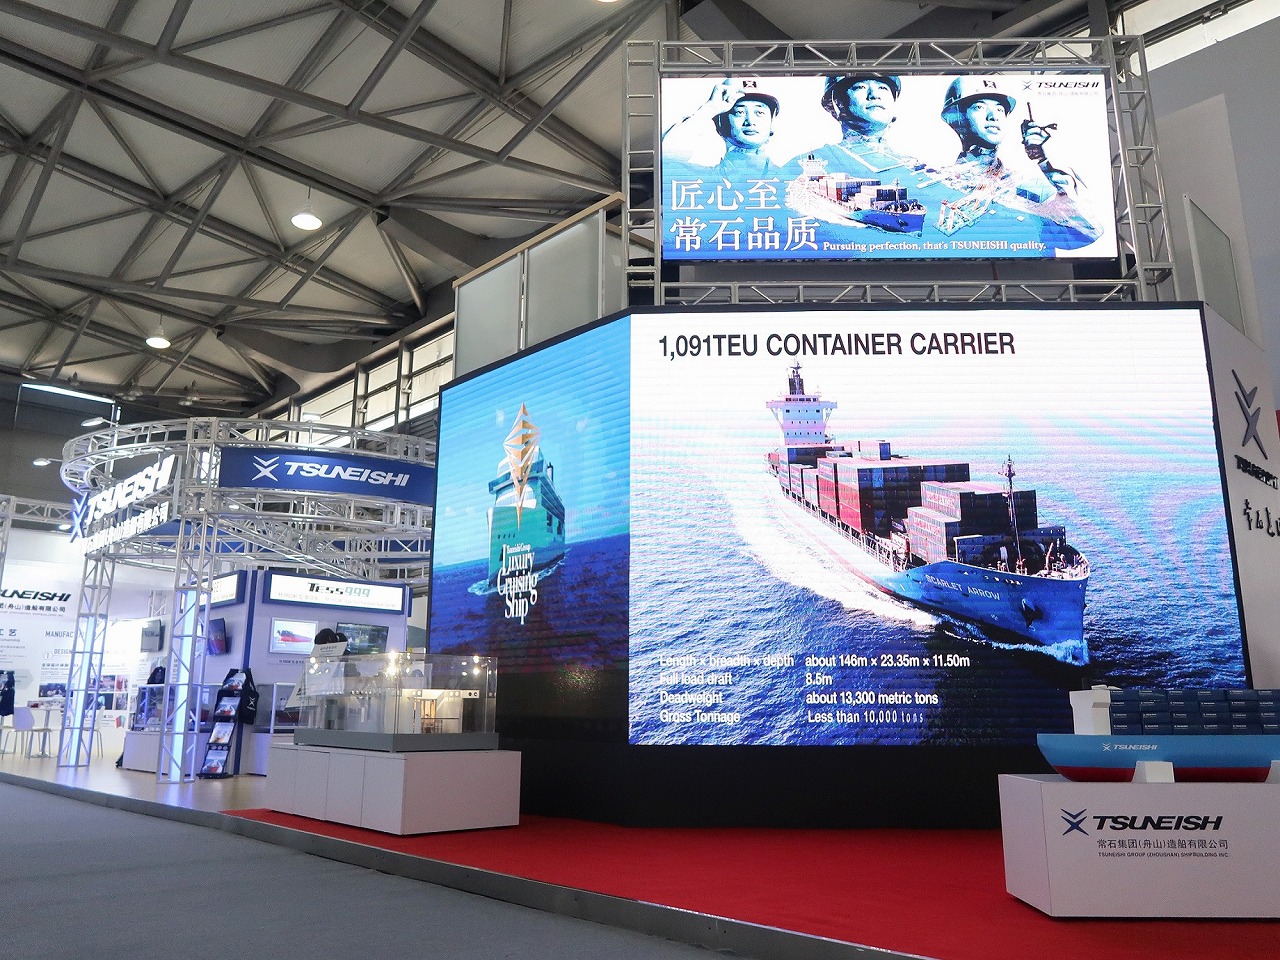 常石集团（舟山）造船有限公司参展亚洲最大型国际海事展览会 “MARINTEC CHINA 2019”